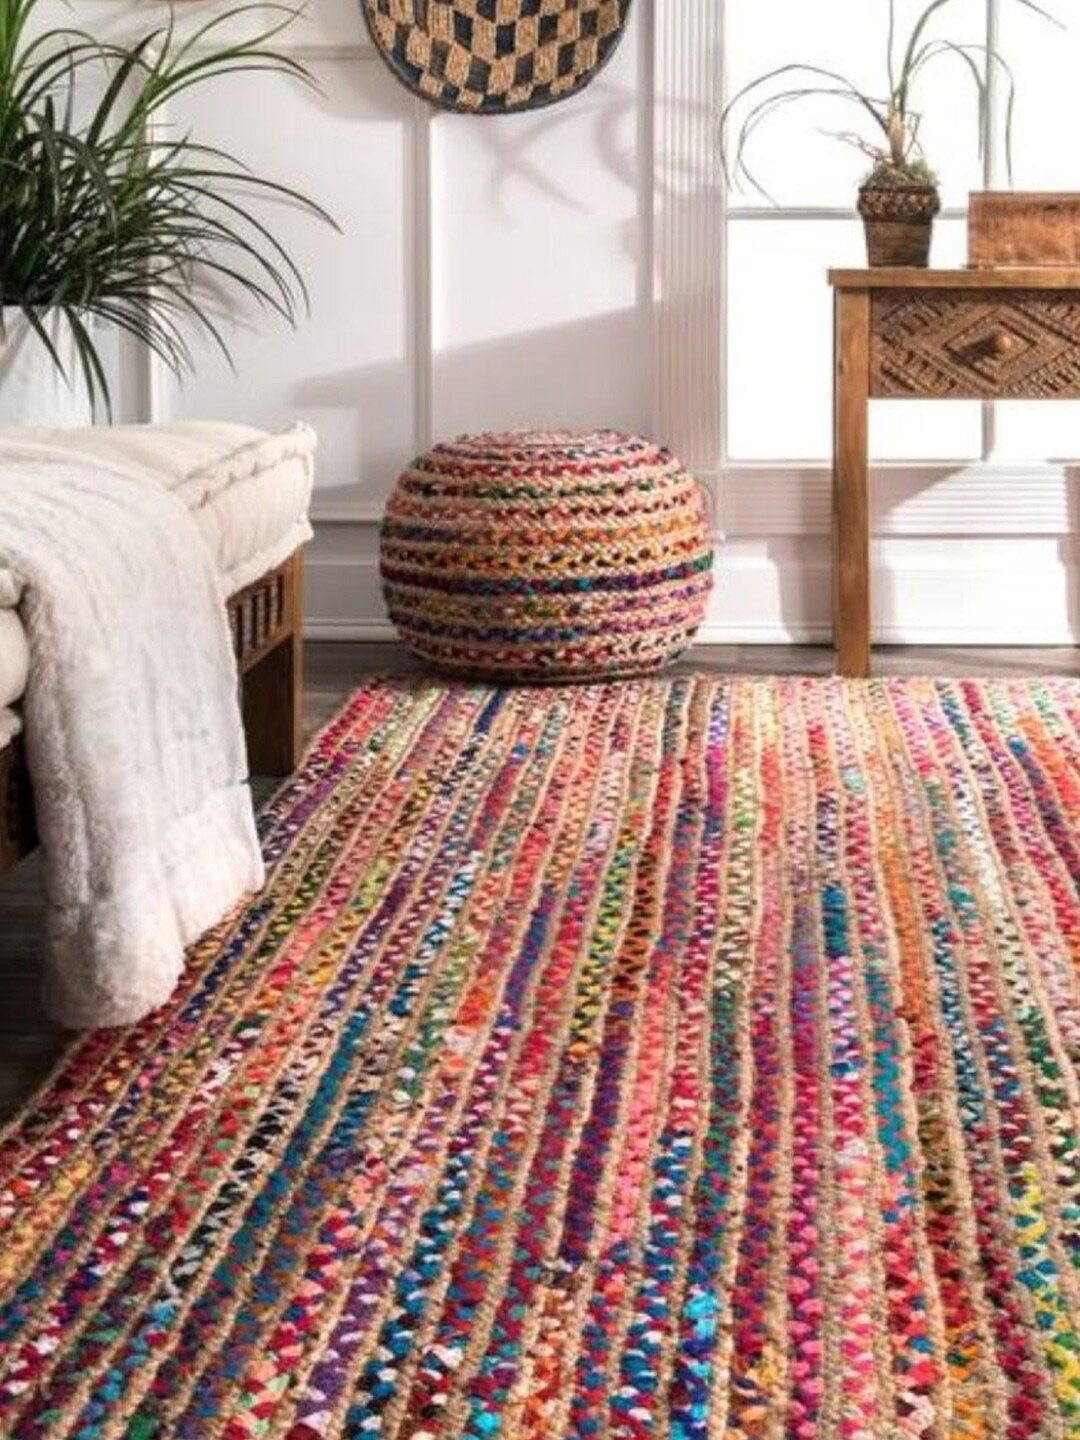 HABERE INDIA Multicoloured Striped Jute Carpet Price in India